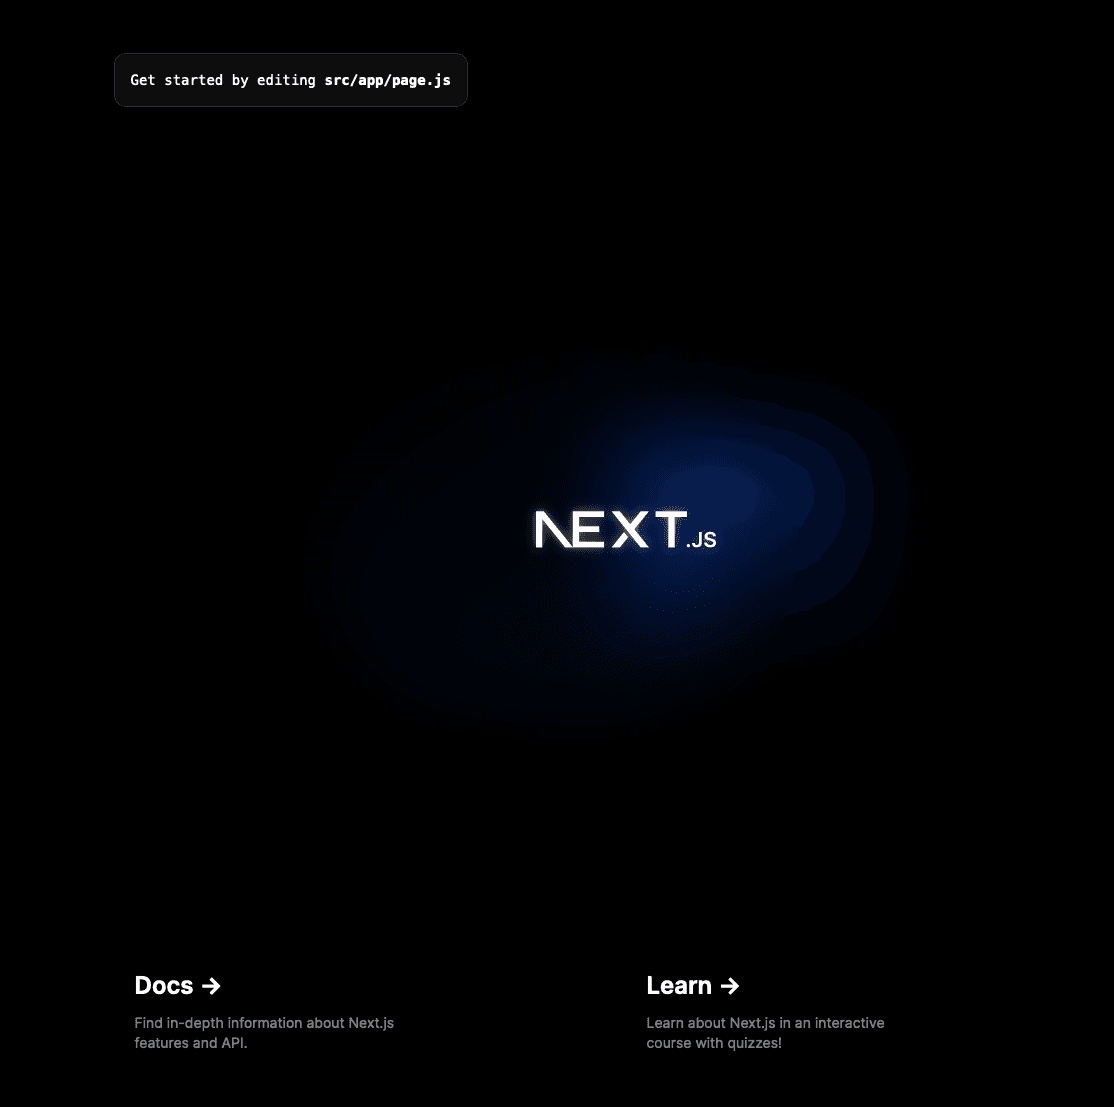 Página padrão do Next.js após a implantação bem-sucedida do Next.js.